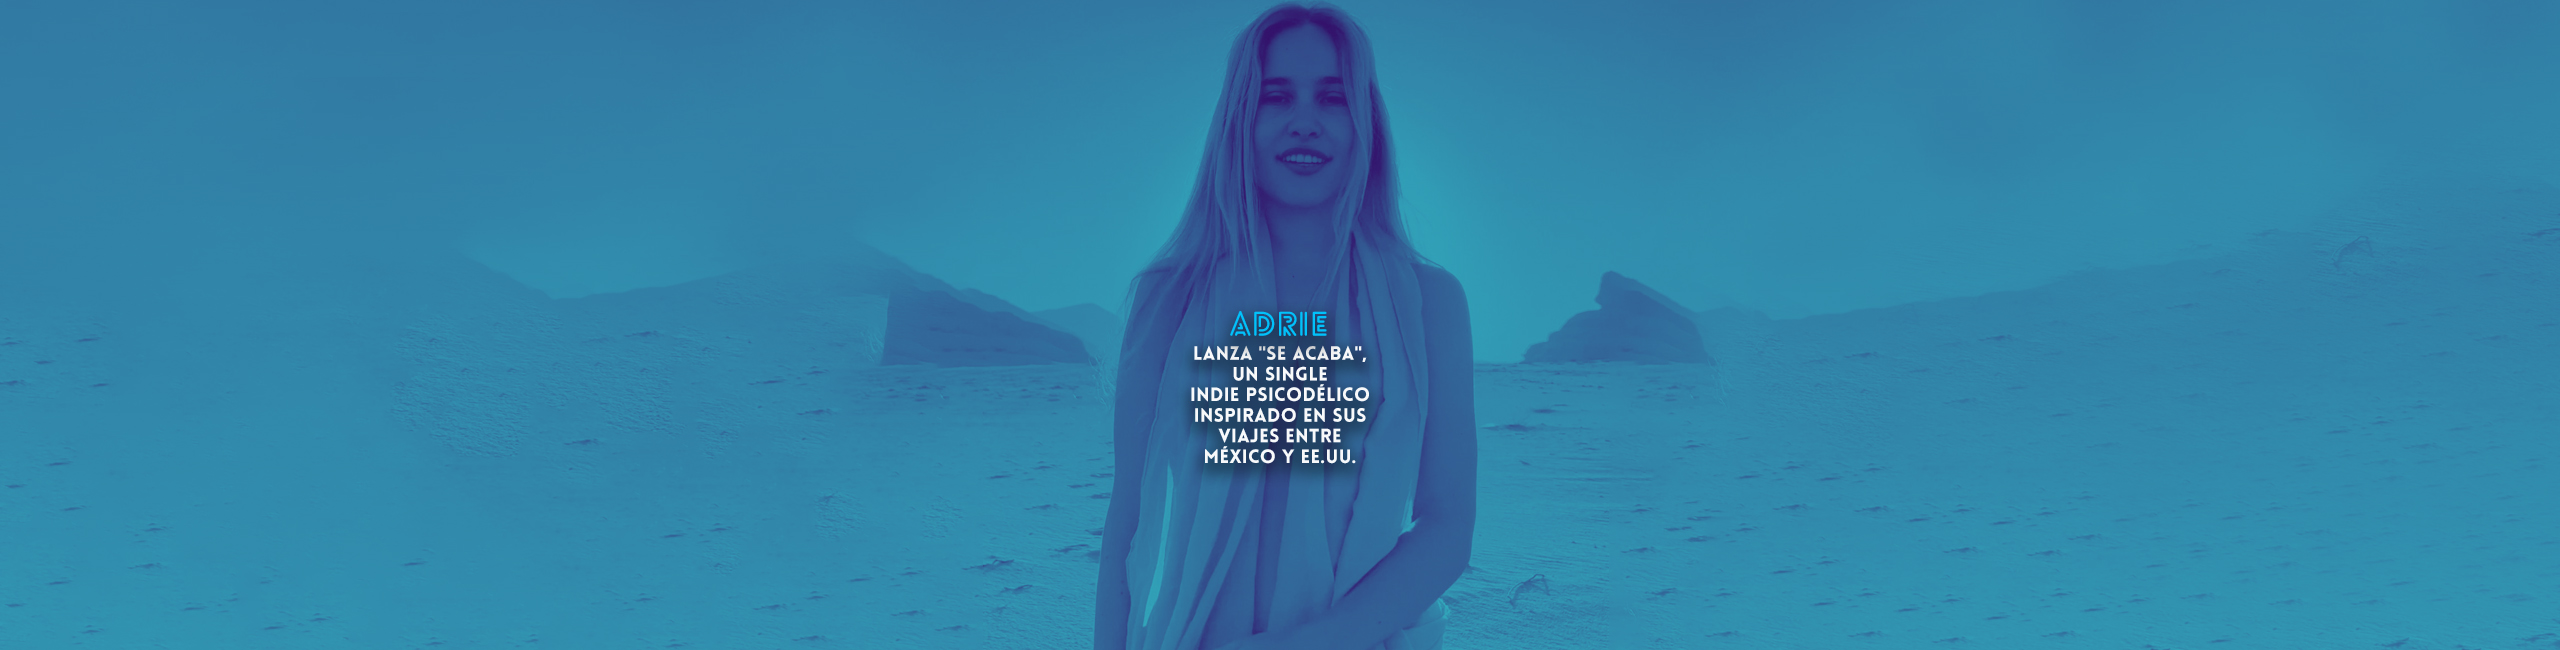 Adrie lanza “Se Acaba”, un single indie psicodélico inspirado en sus viajes entre México y EE.UU.